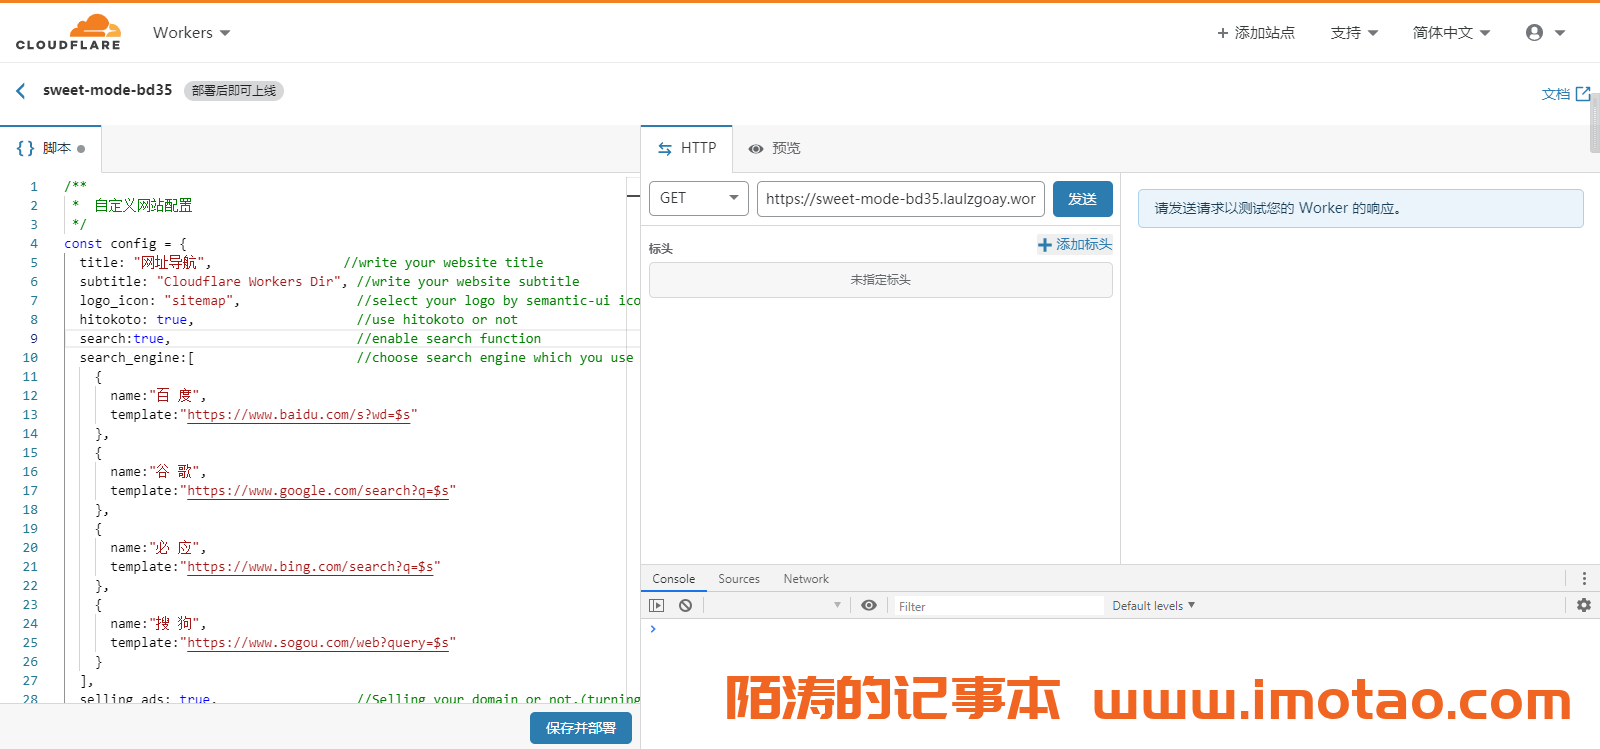 使用 CF-Worker-Dir 在 Cloudflare Worker 上免费搭建导航网站